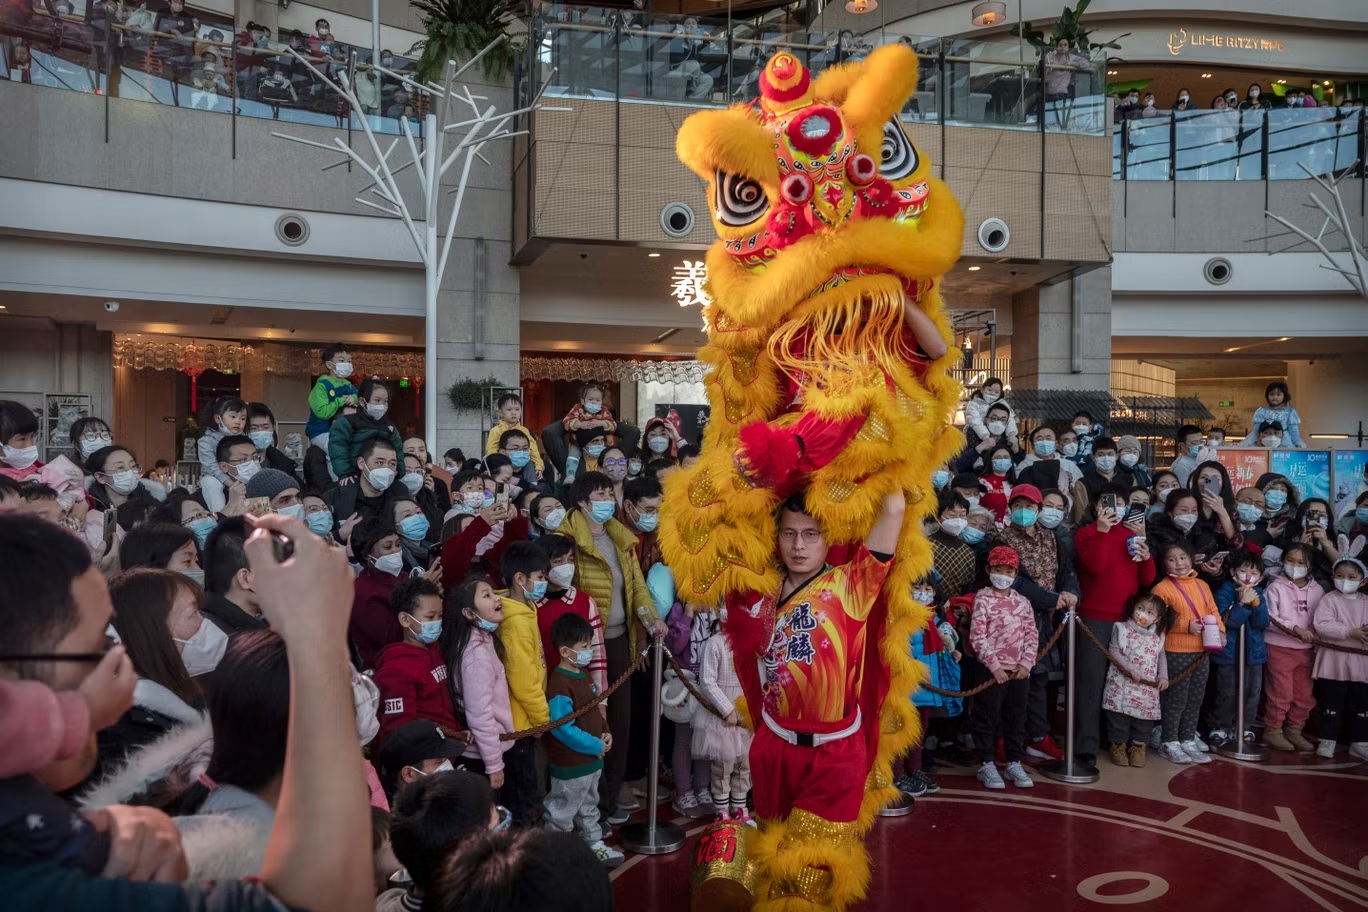 راقصون بزي أسد يقدمون عرضاً أمام الجمهور خلال احتفالات السنة القمرية الصينية الجديدة والربيع داخل مركز تسوق في 26 يناير (غيتي)